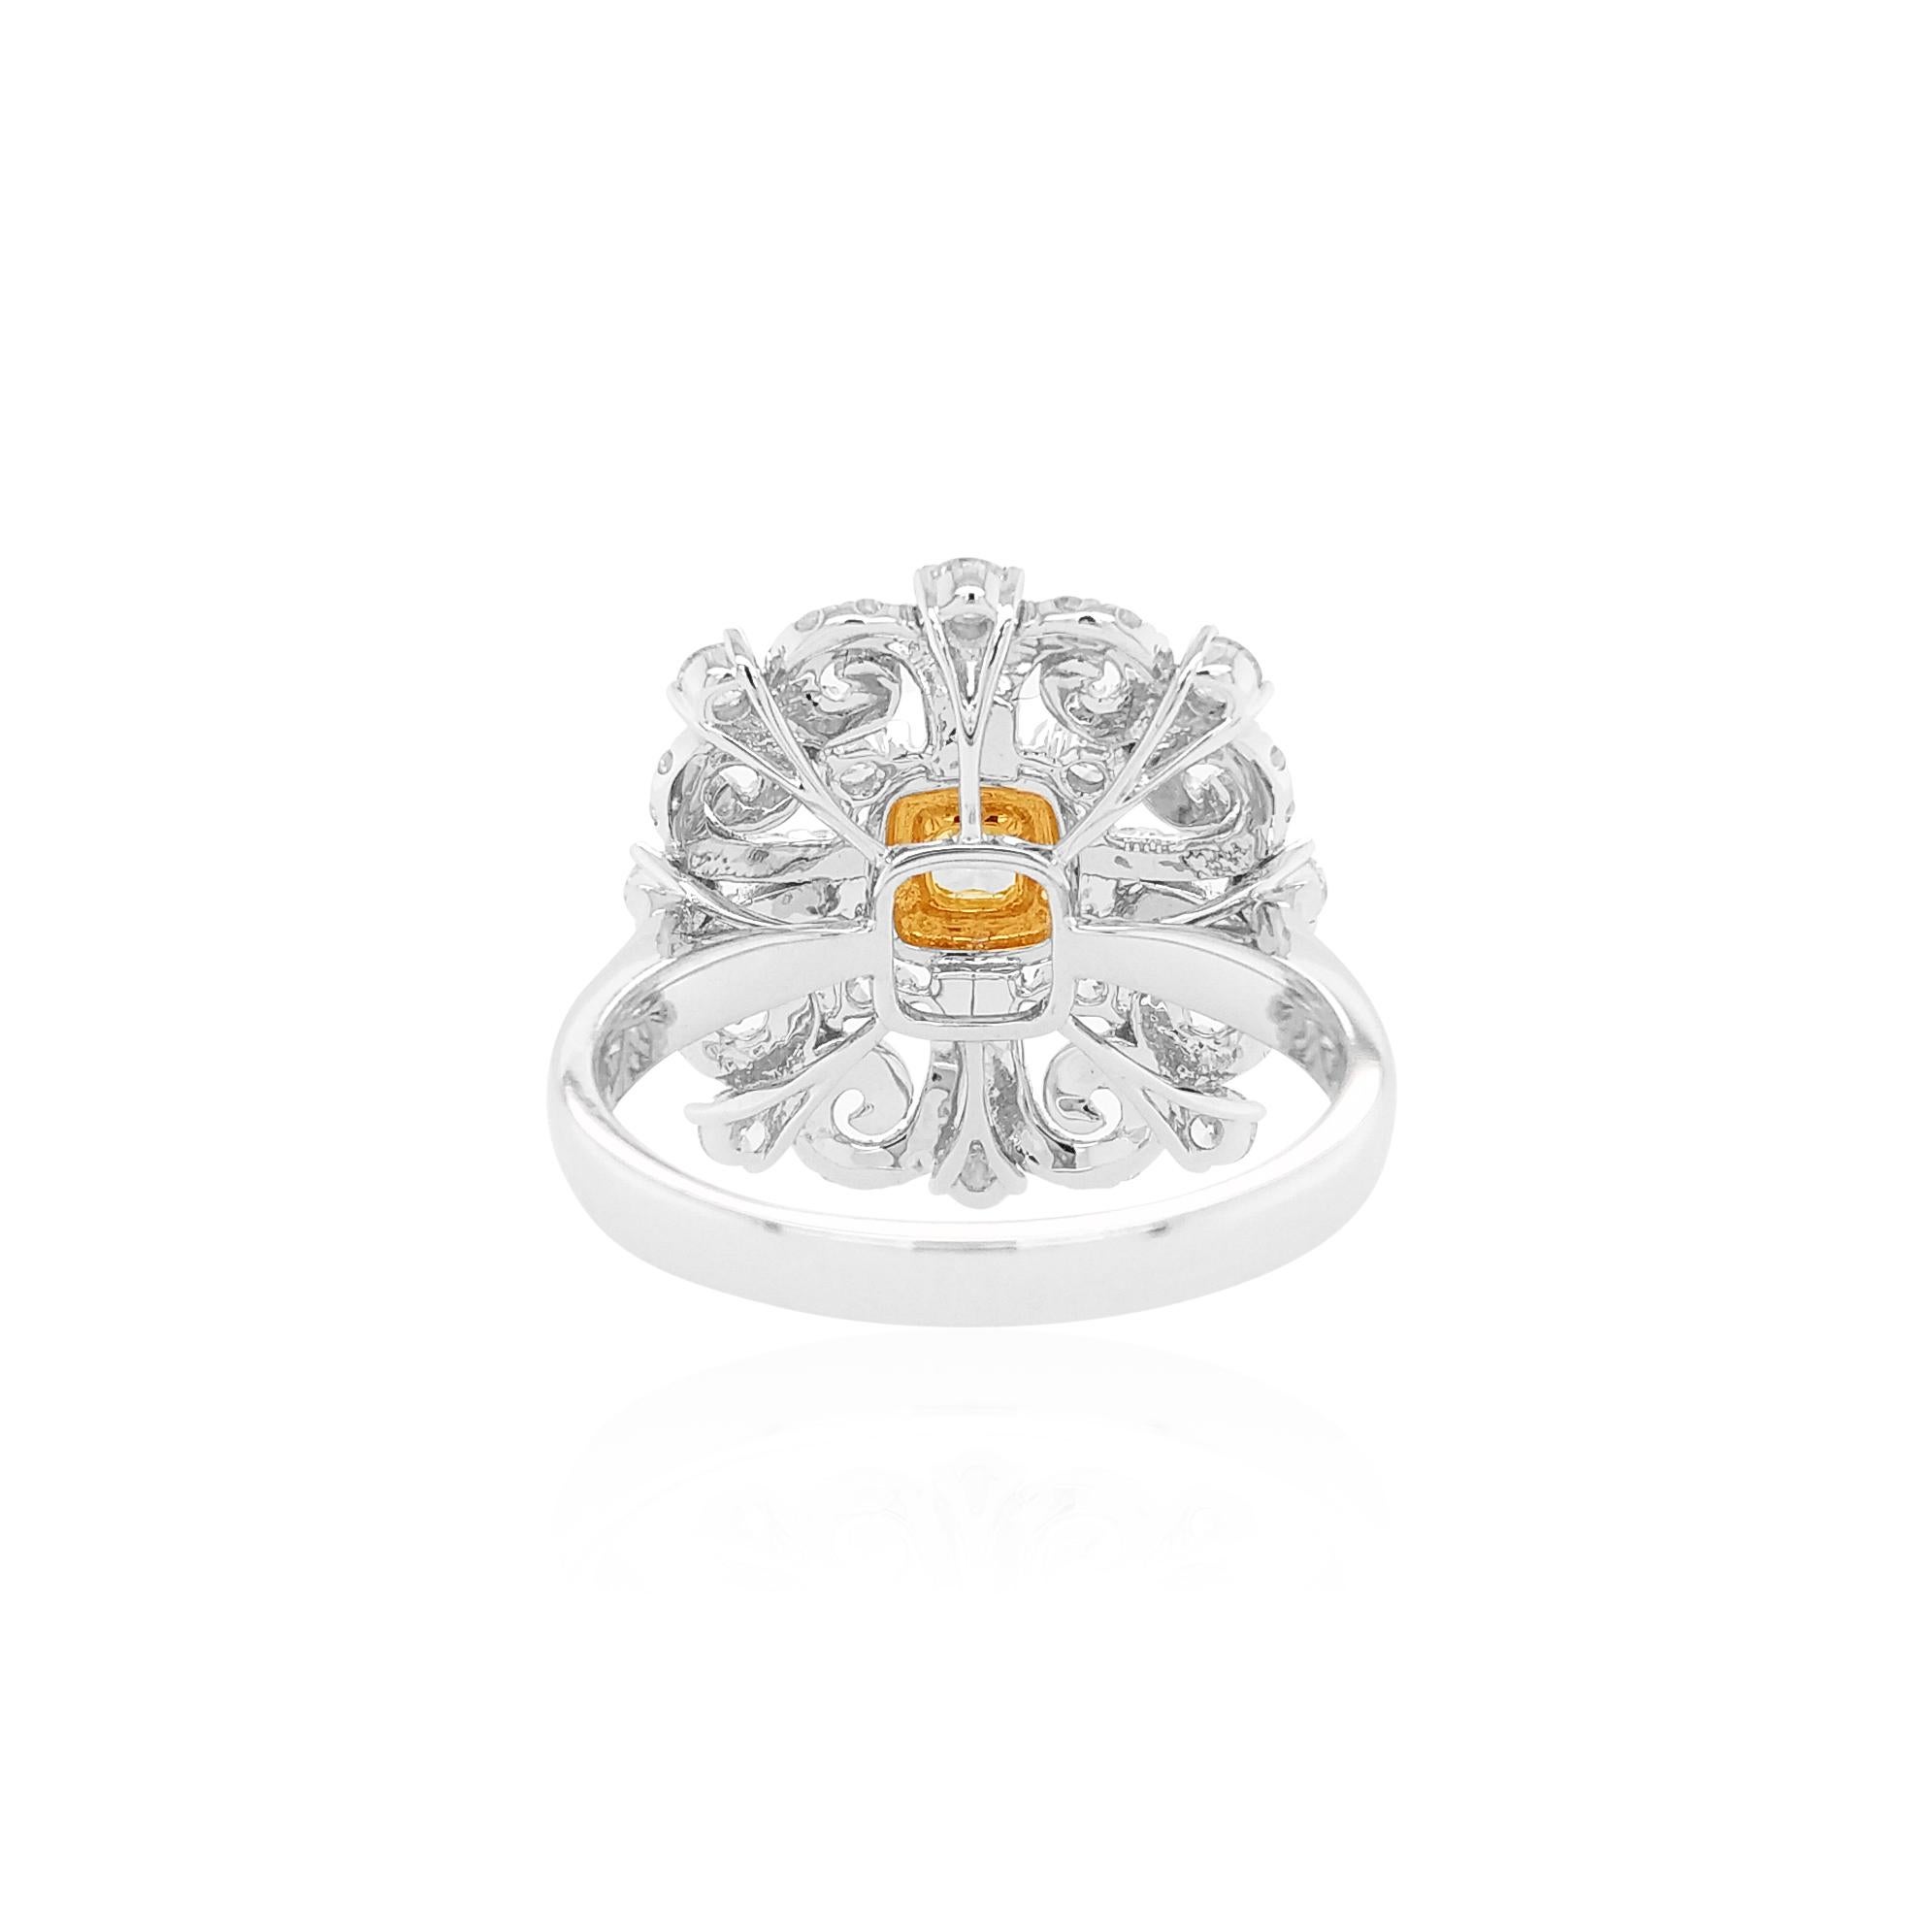 Dieser atemberaubende Ring aus 18 Karat Weißgold hat einen intensiv gelben Fancy-Diamanten in der Mitte, umgeben von einem Halo aus gelben Diamanten und einem kühnen Muster aus funkelnden weißen Diamanten, die das Licht auf einzigartige Weise